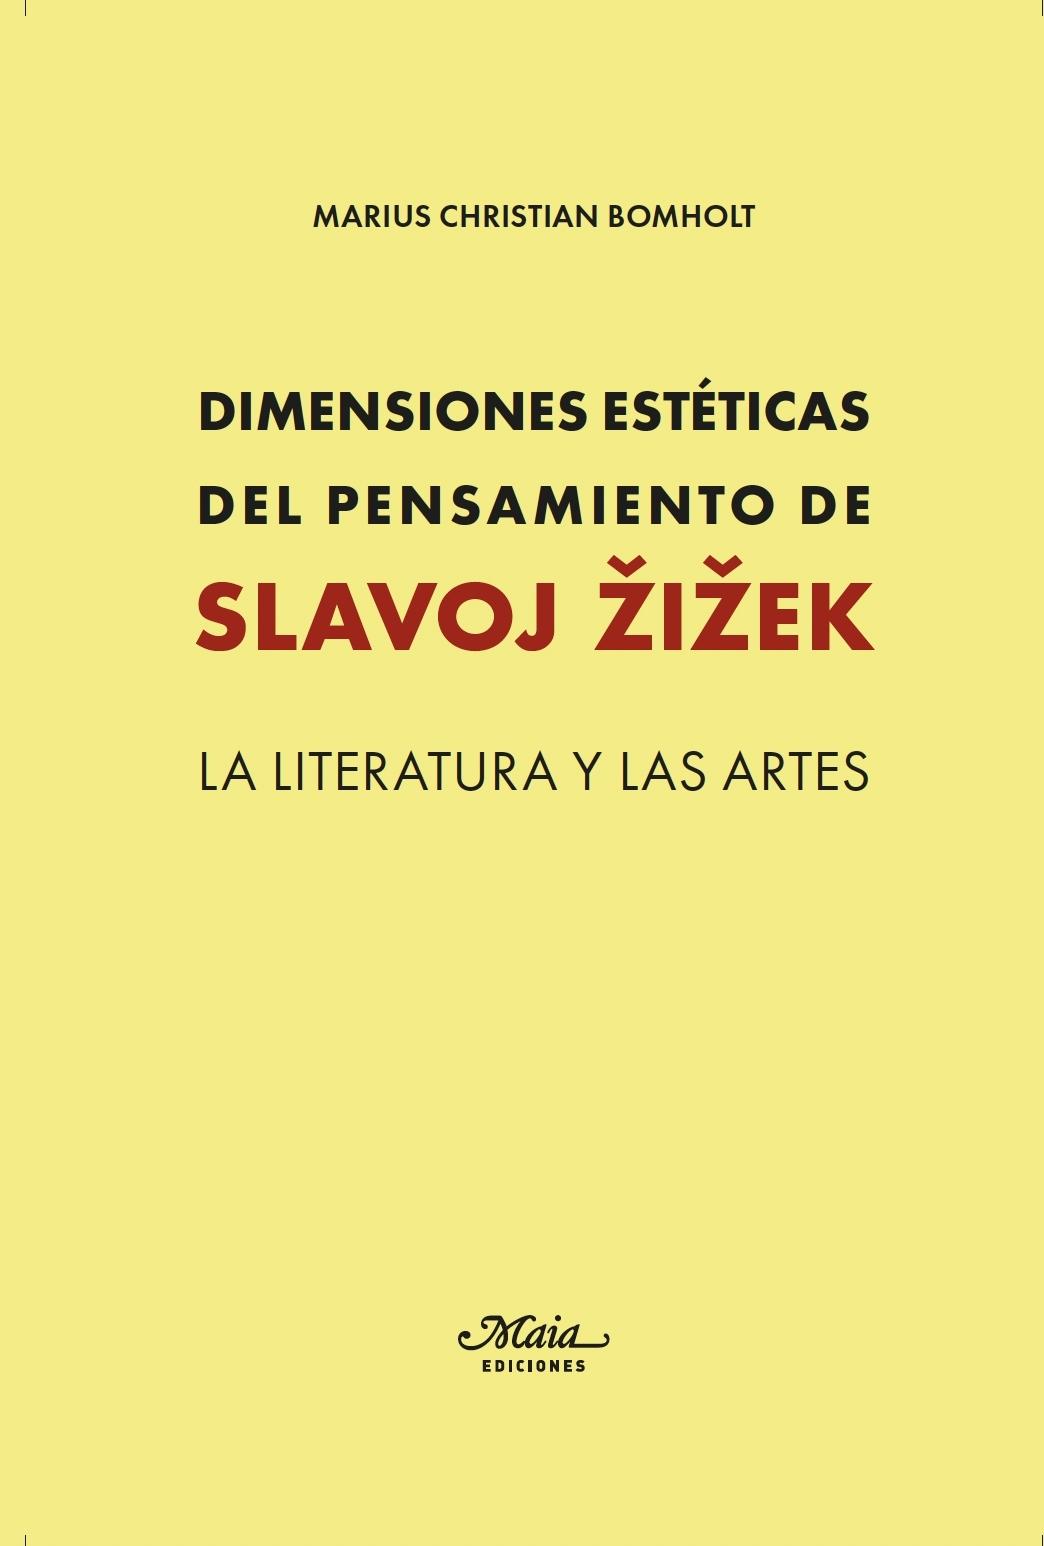 Dimensiones Estéticas del Pensamiento de Slavoj Zizek "La Literatura y las Artes". 